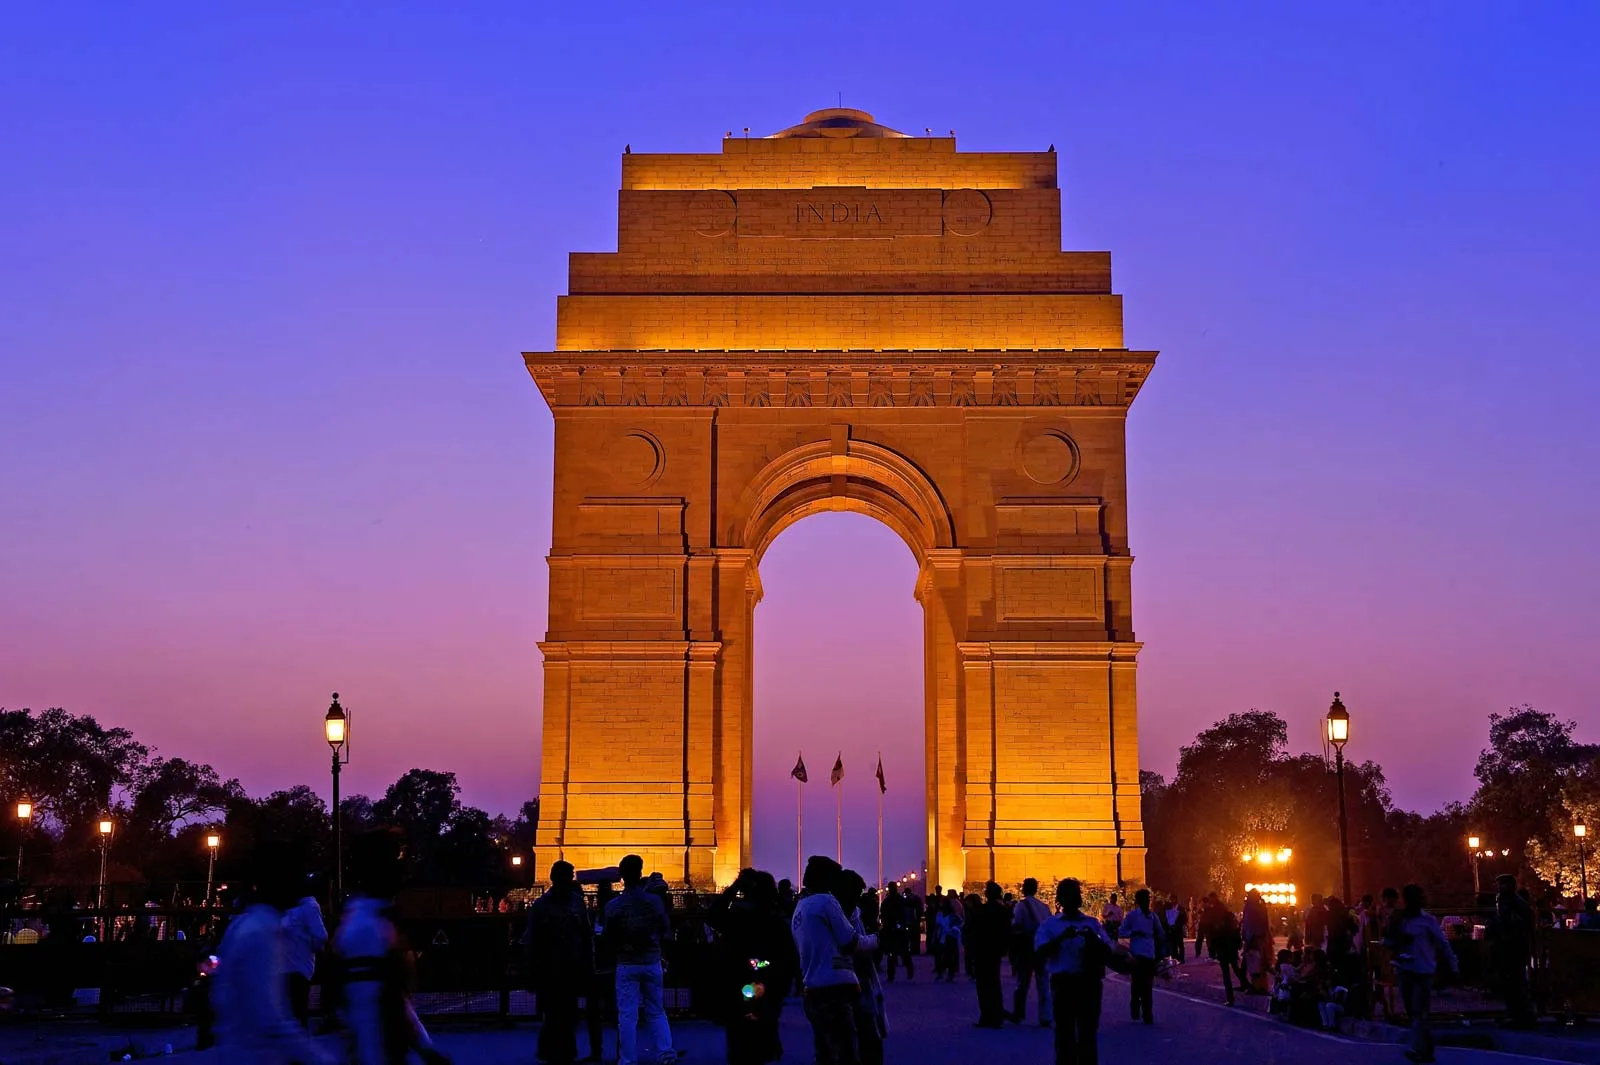 Delhi, gọi chính thức là Lãnh thổ Thủ đô Quốc gia Delhi, là lãnh thổ thủ đô của Ấn Độ. Trong thời kỳ Ấn Độ thuộc Anh, Delhi là bộ phận của tỉnh Punjab và duy trì liên kết lịch sử và văn hóa với khu vực Punjab và Doab.